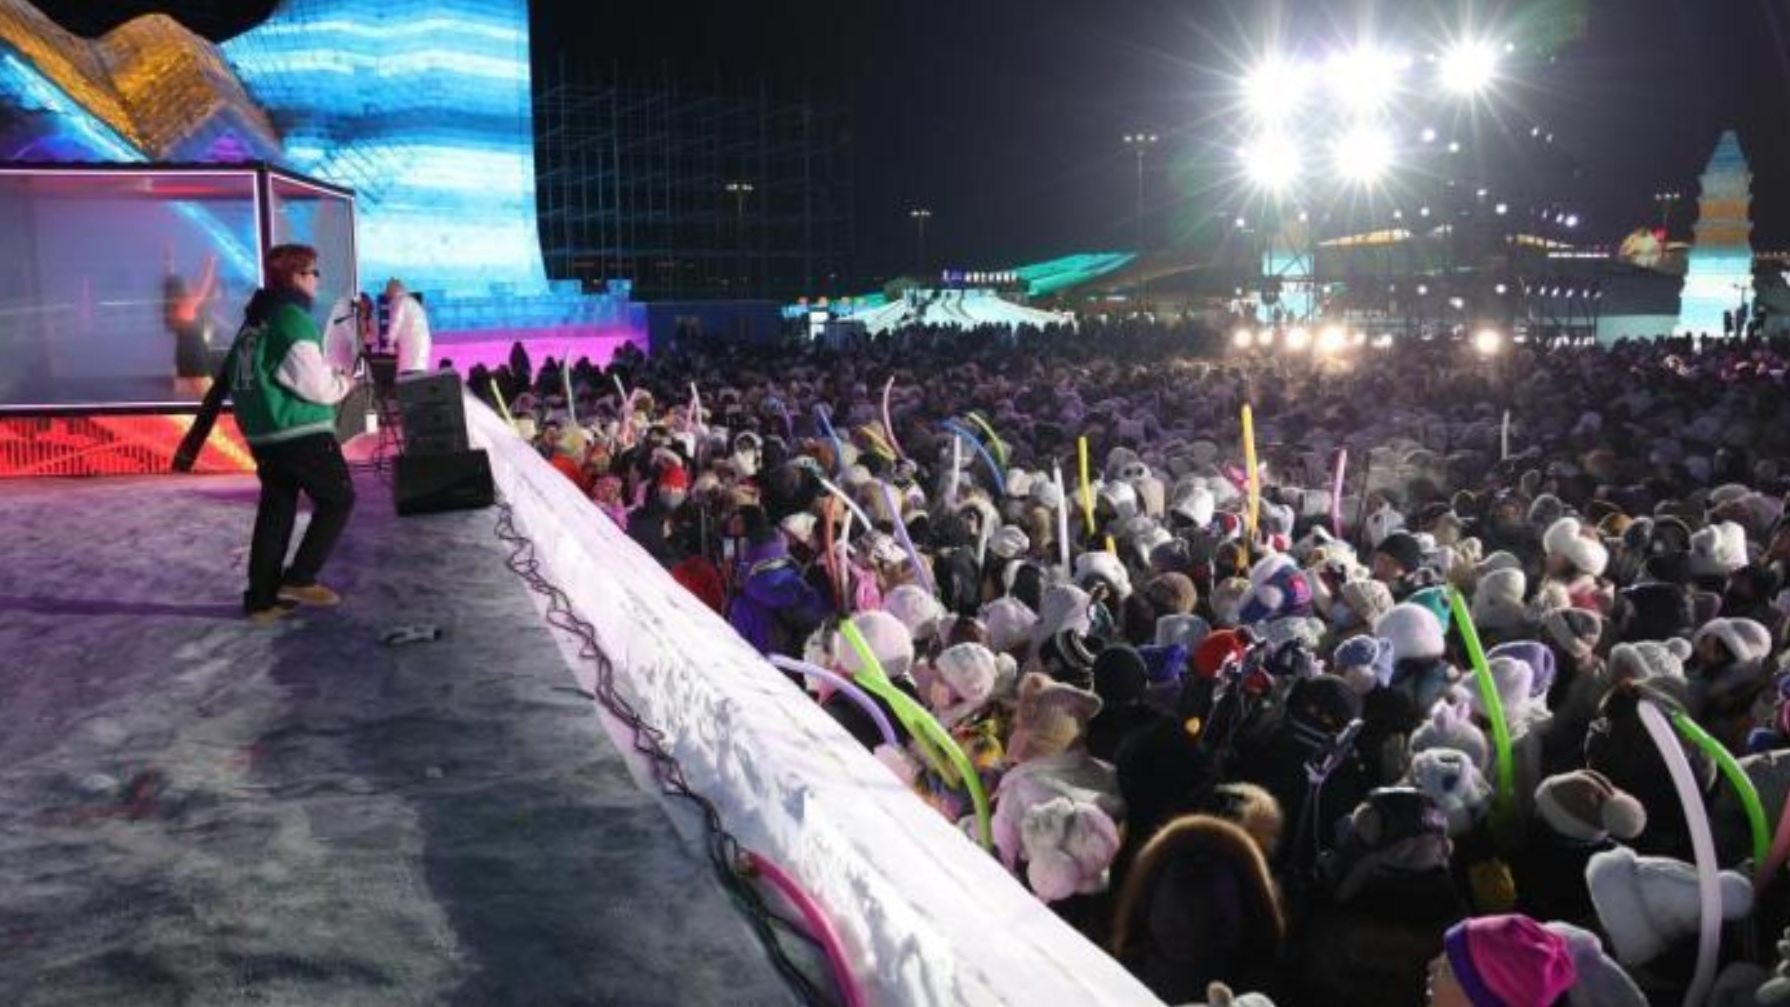 哈尔滨冰雪大世界“万人羽绒服雪地派对”